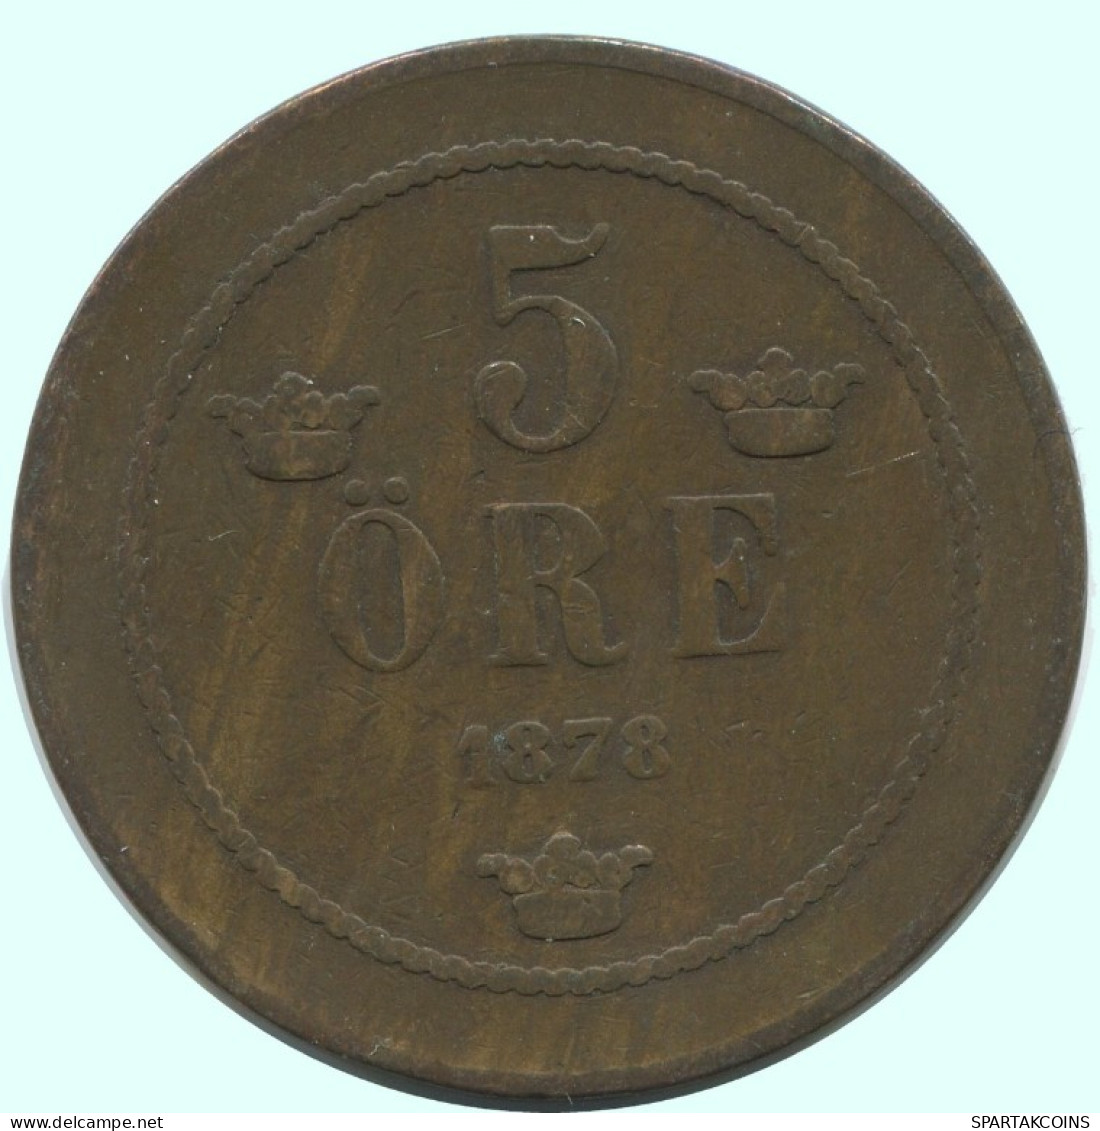 5 ORE 1878 SUECIA SWEDEN Moneda #AC588.2.E.A - Schweden